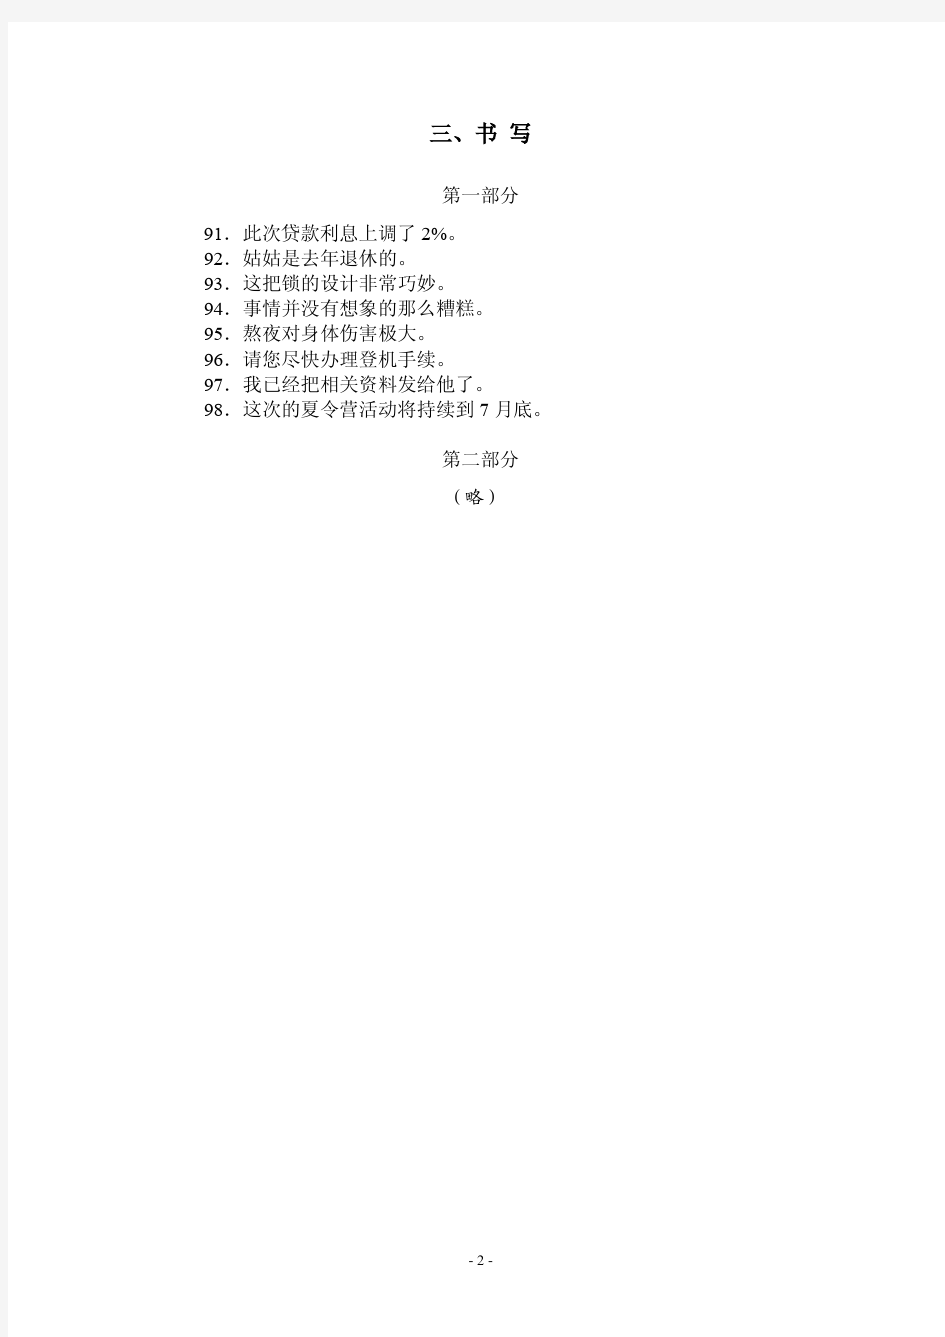 汉语水平考试H51333答案